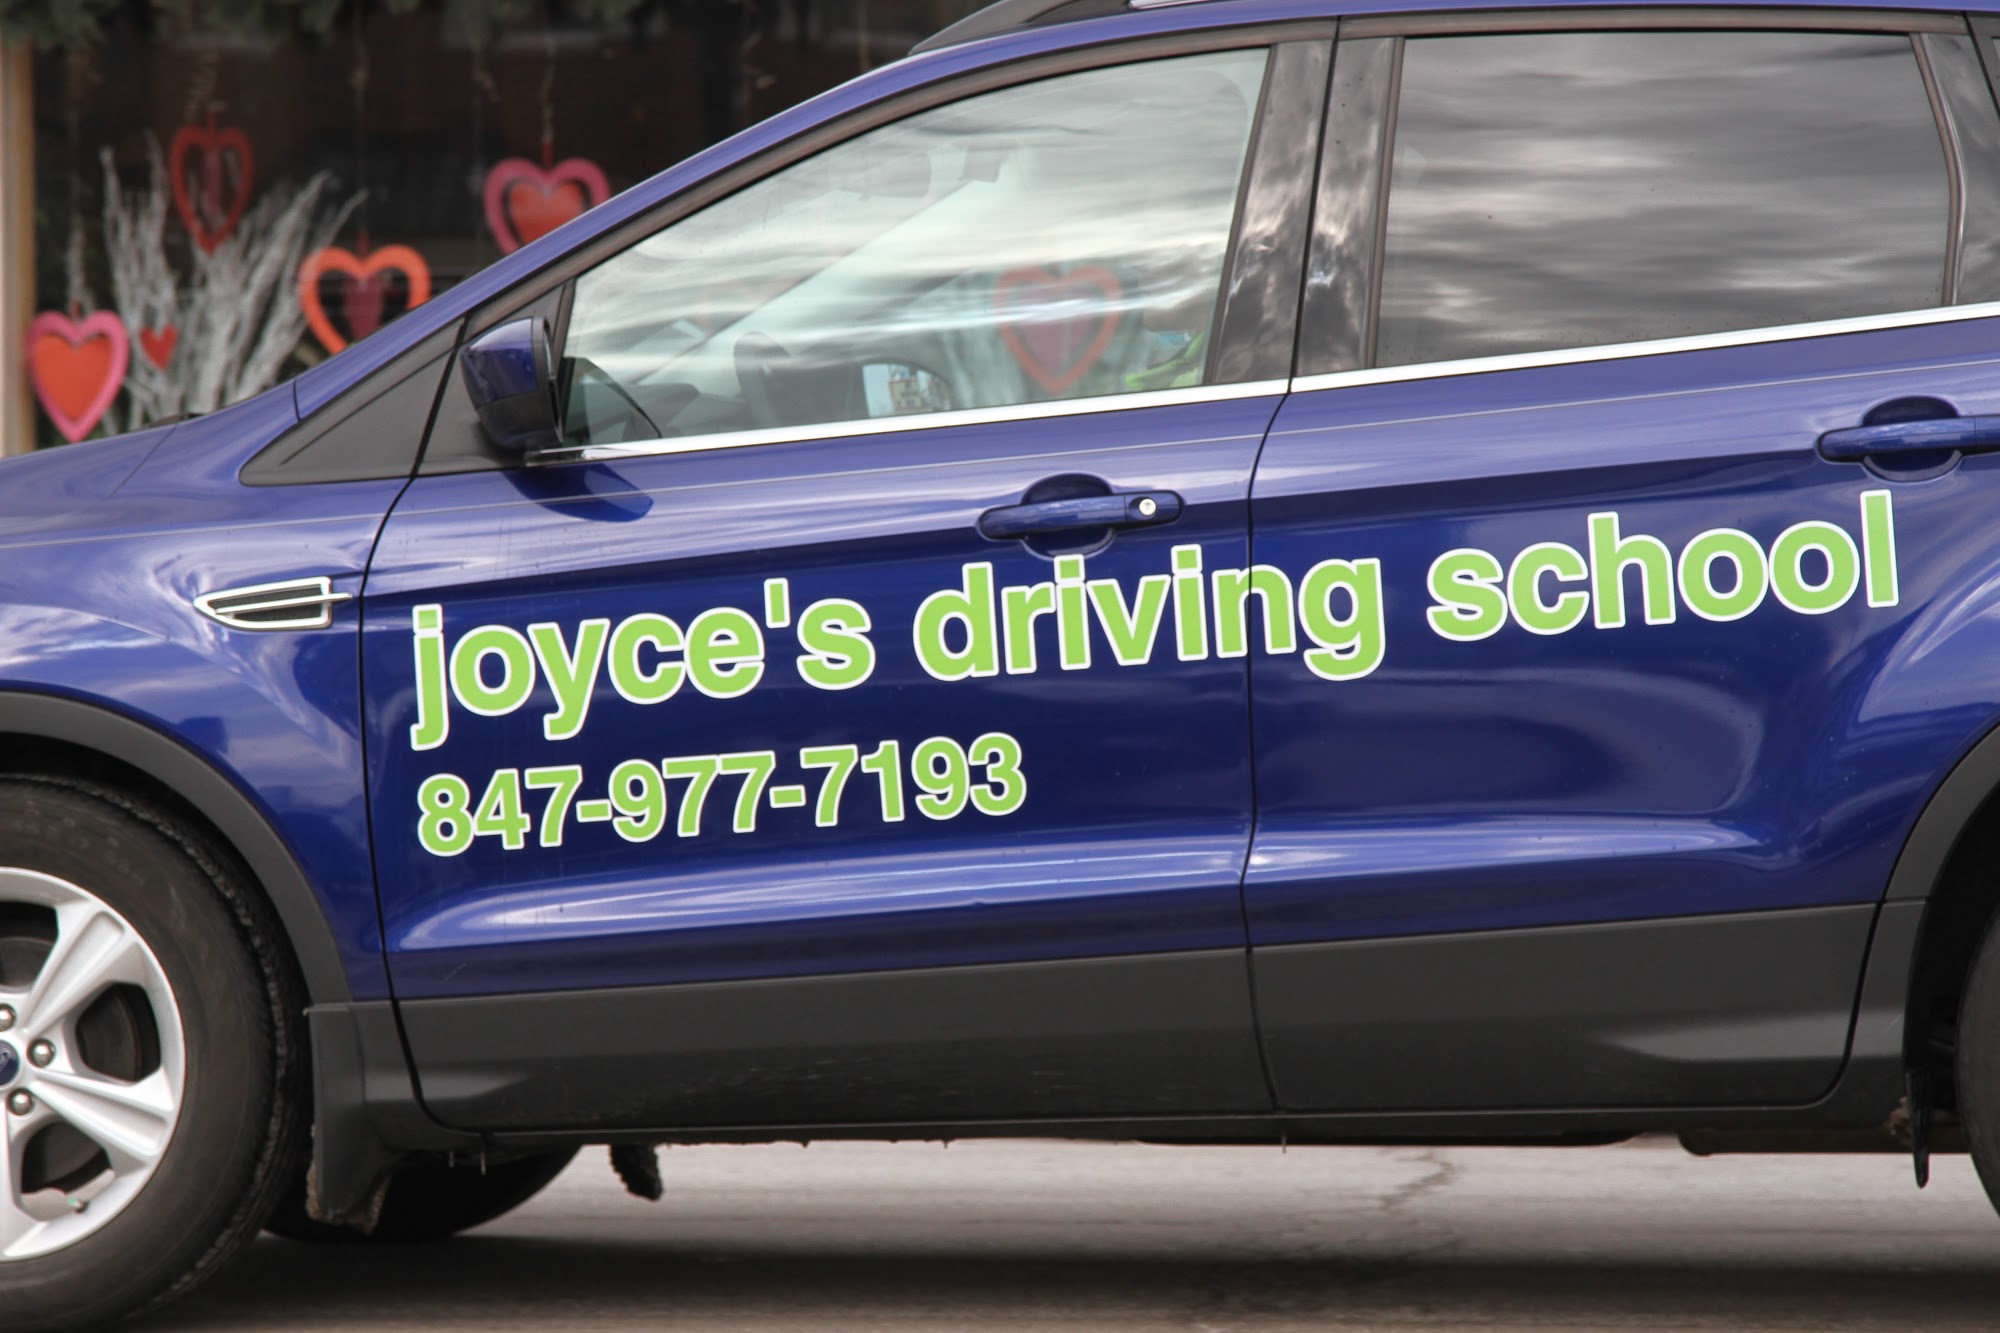 Joyce's Driving School